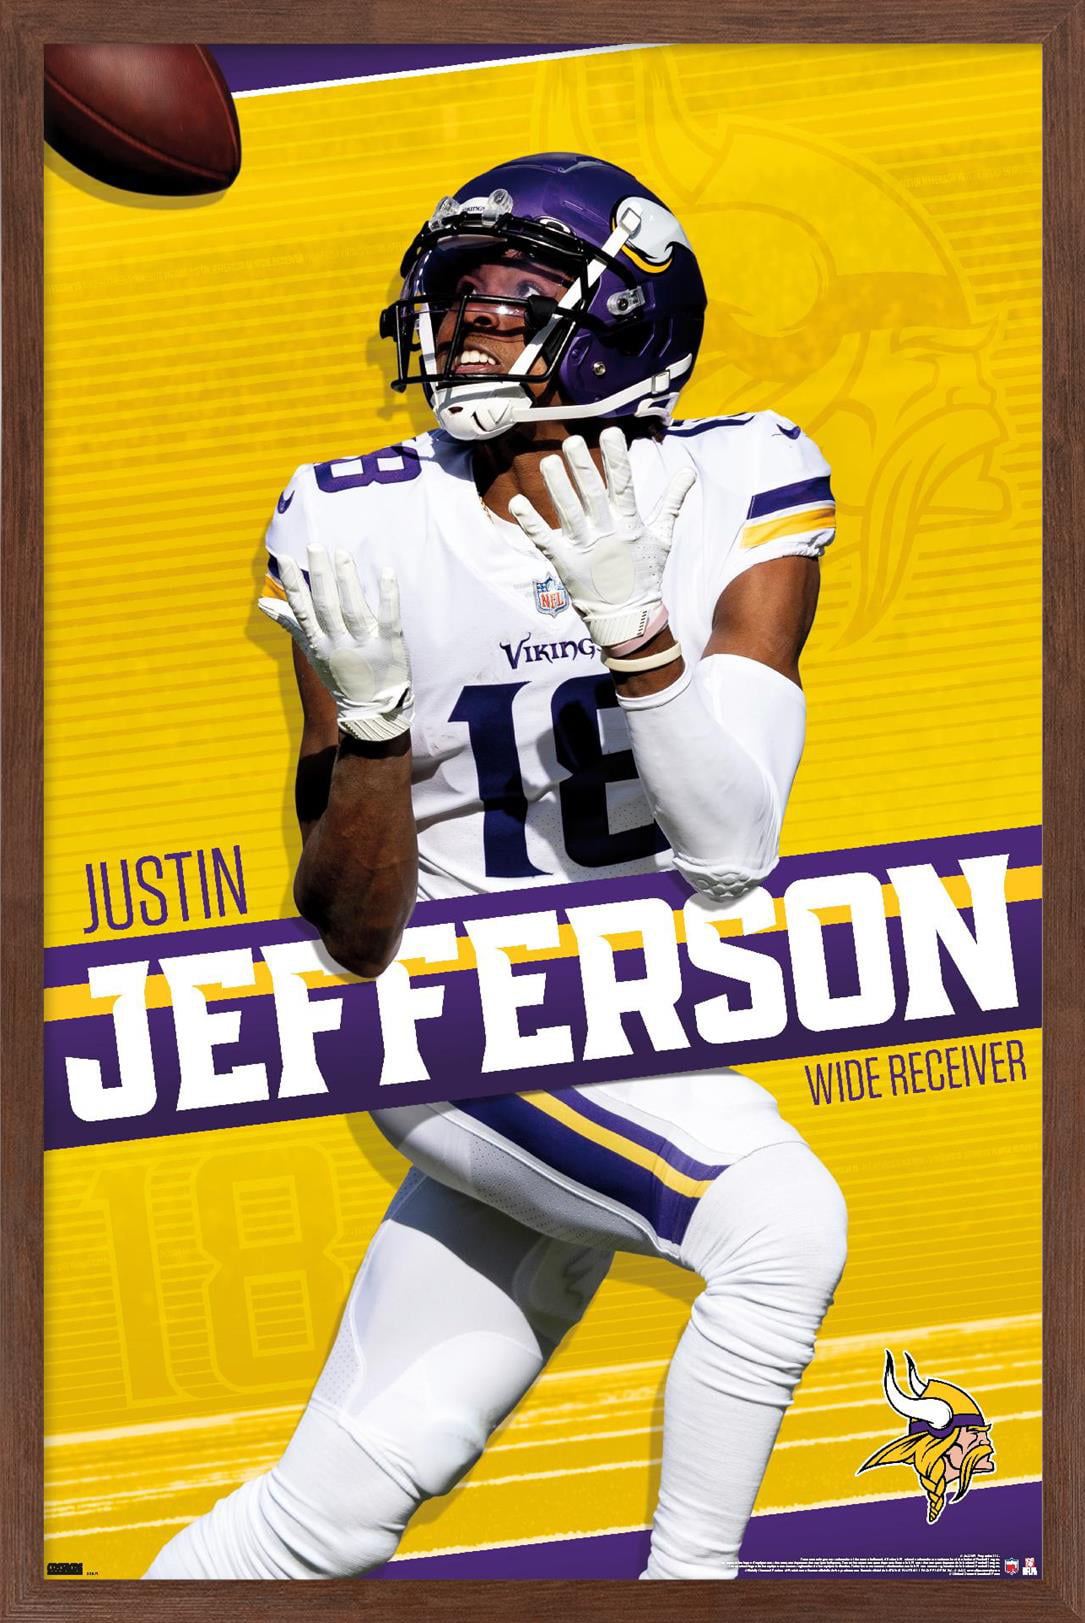 NFL Minnesota Vikings - Justin Jefferson 22 Wall Poster, 22.375' x 34' 